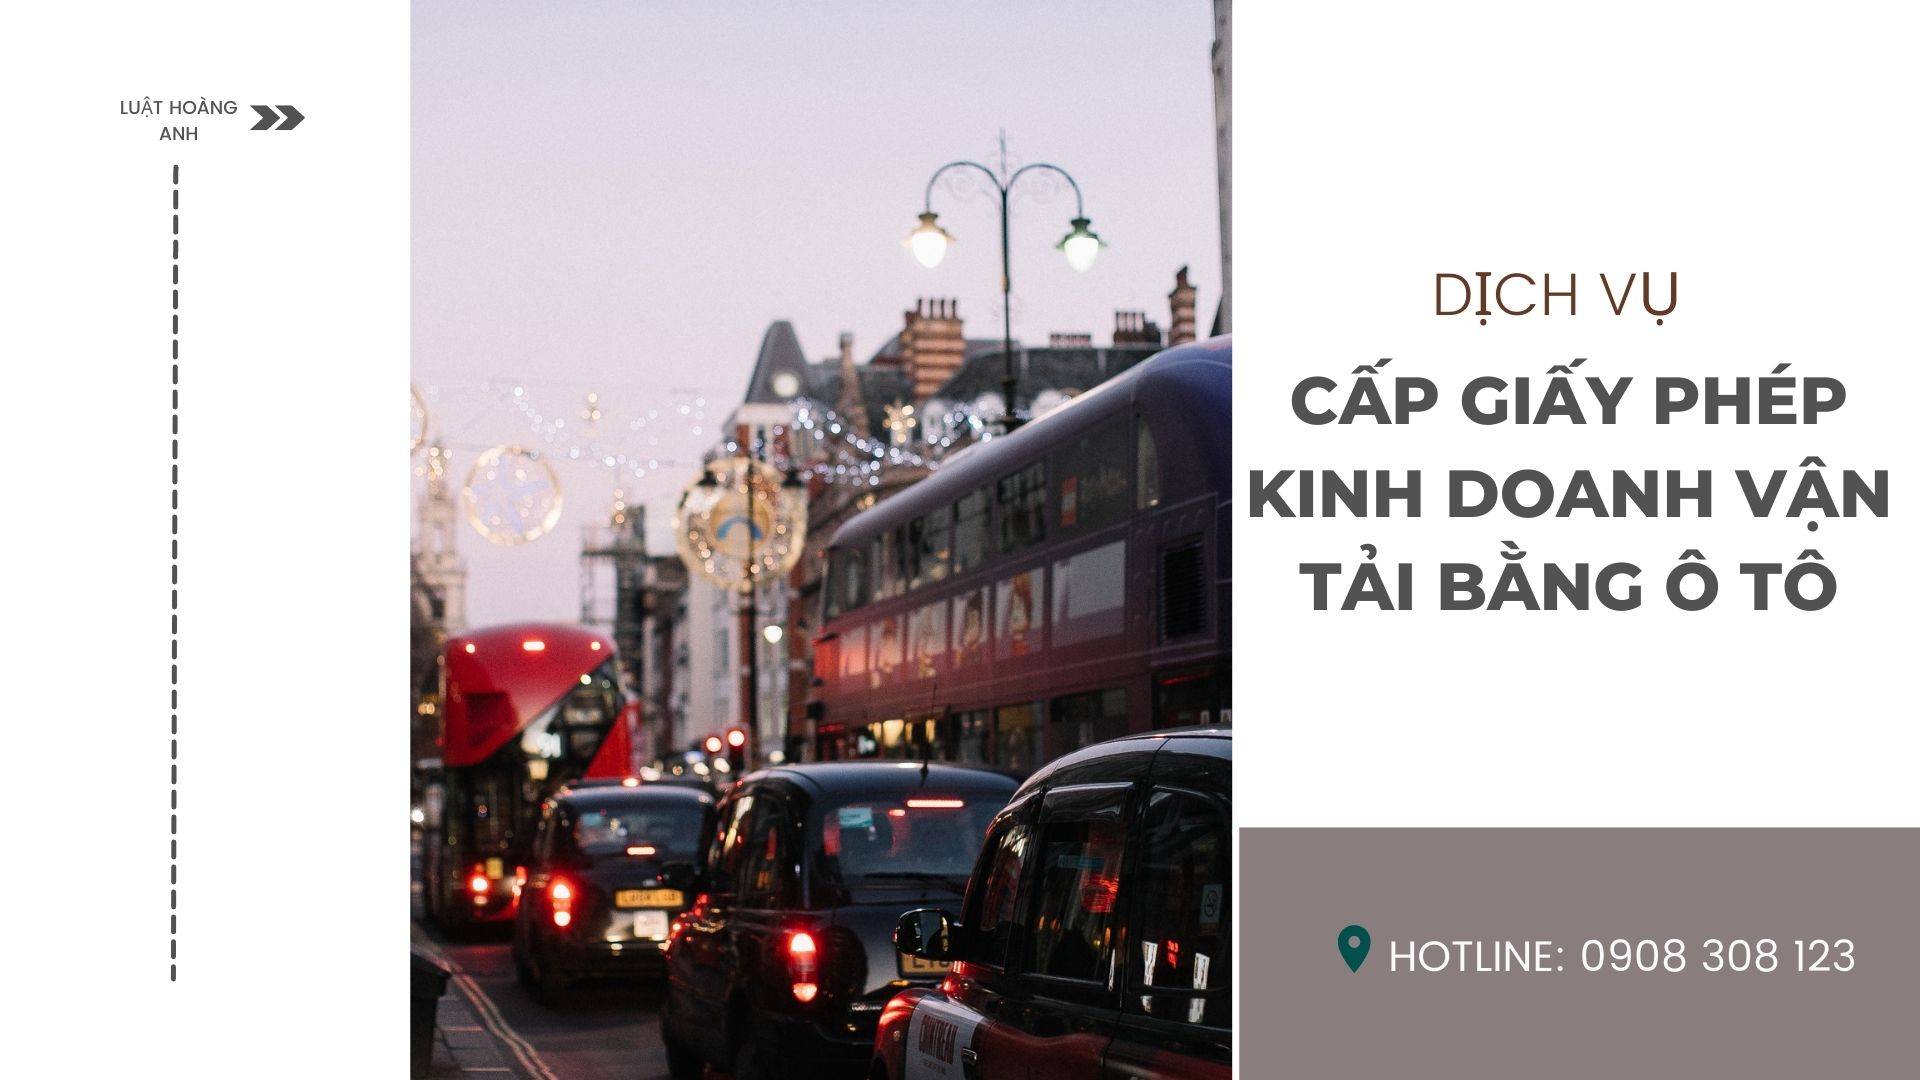 Dịch vụ cấp giấy phép kinh doanh vận tải bằng ô tô tại tỉnh Nam Định